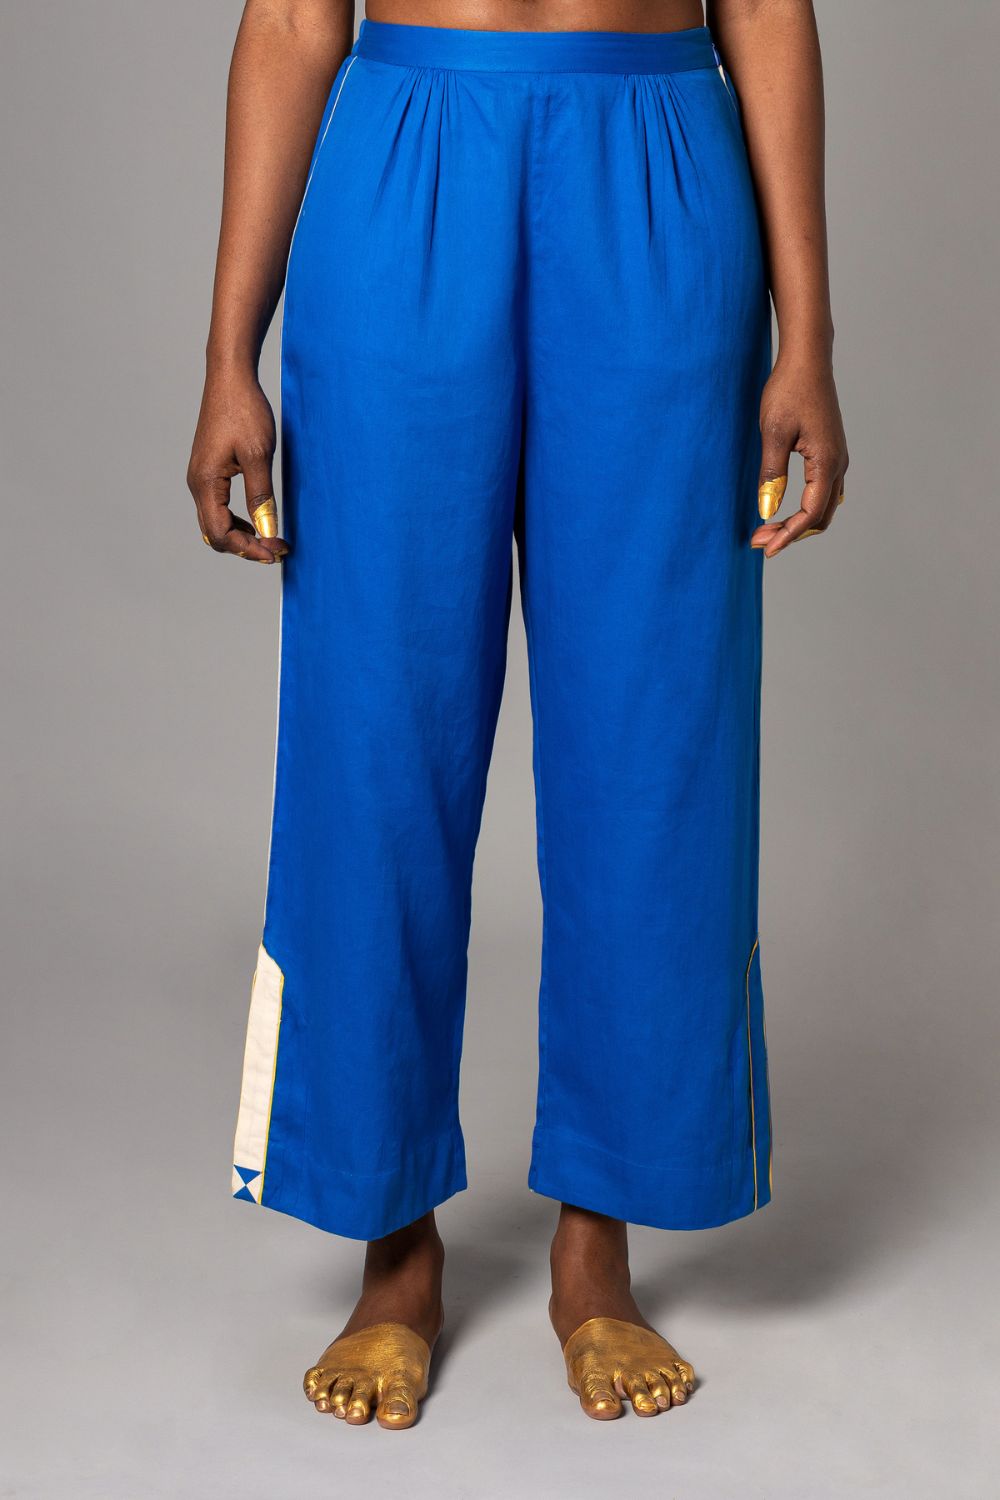 Kofi Blue Pyjama